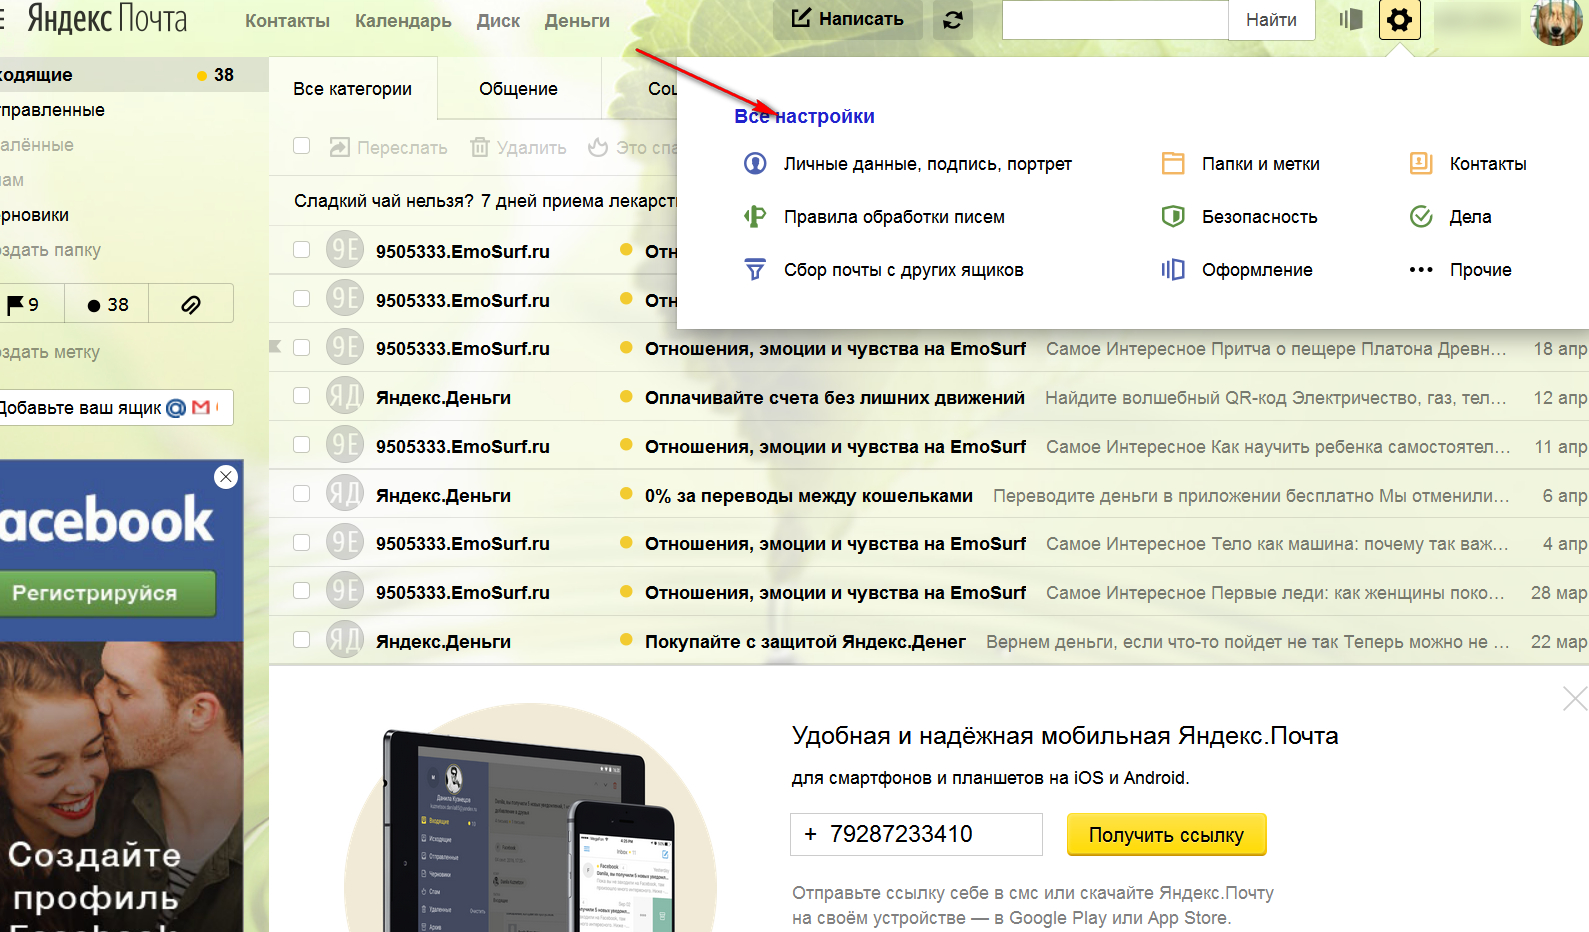 Яндекс почта для планшета